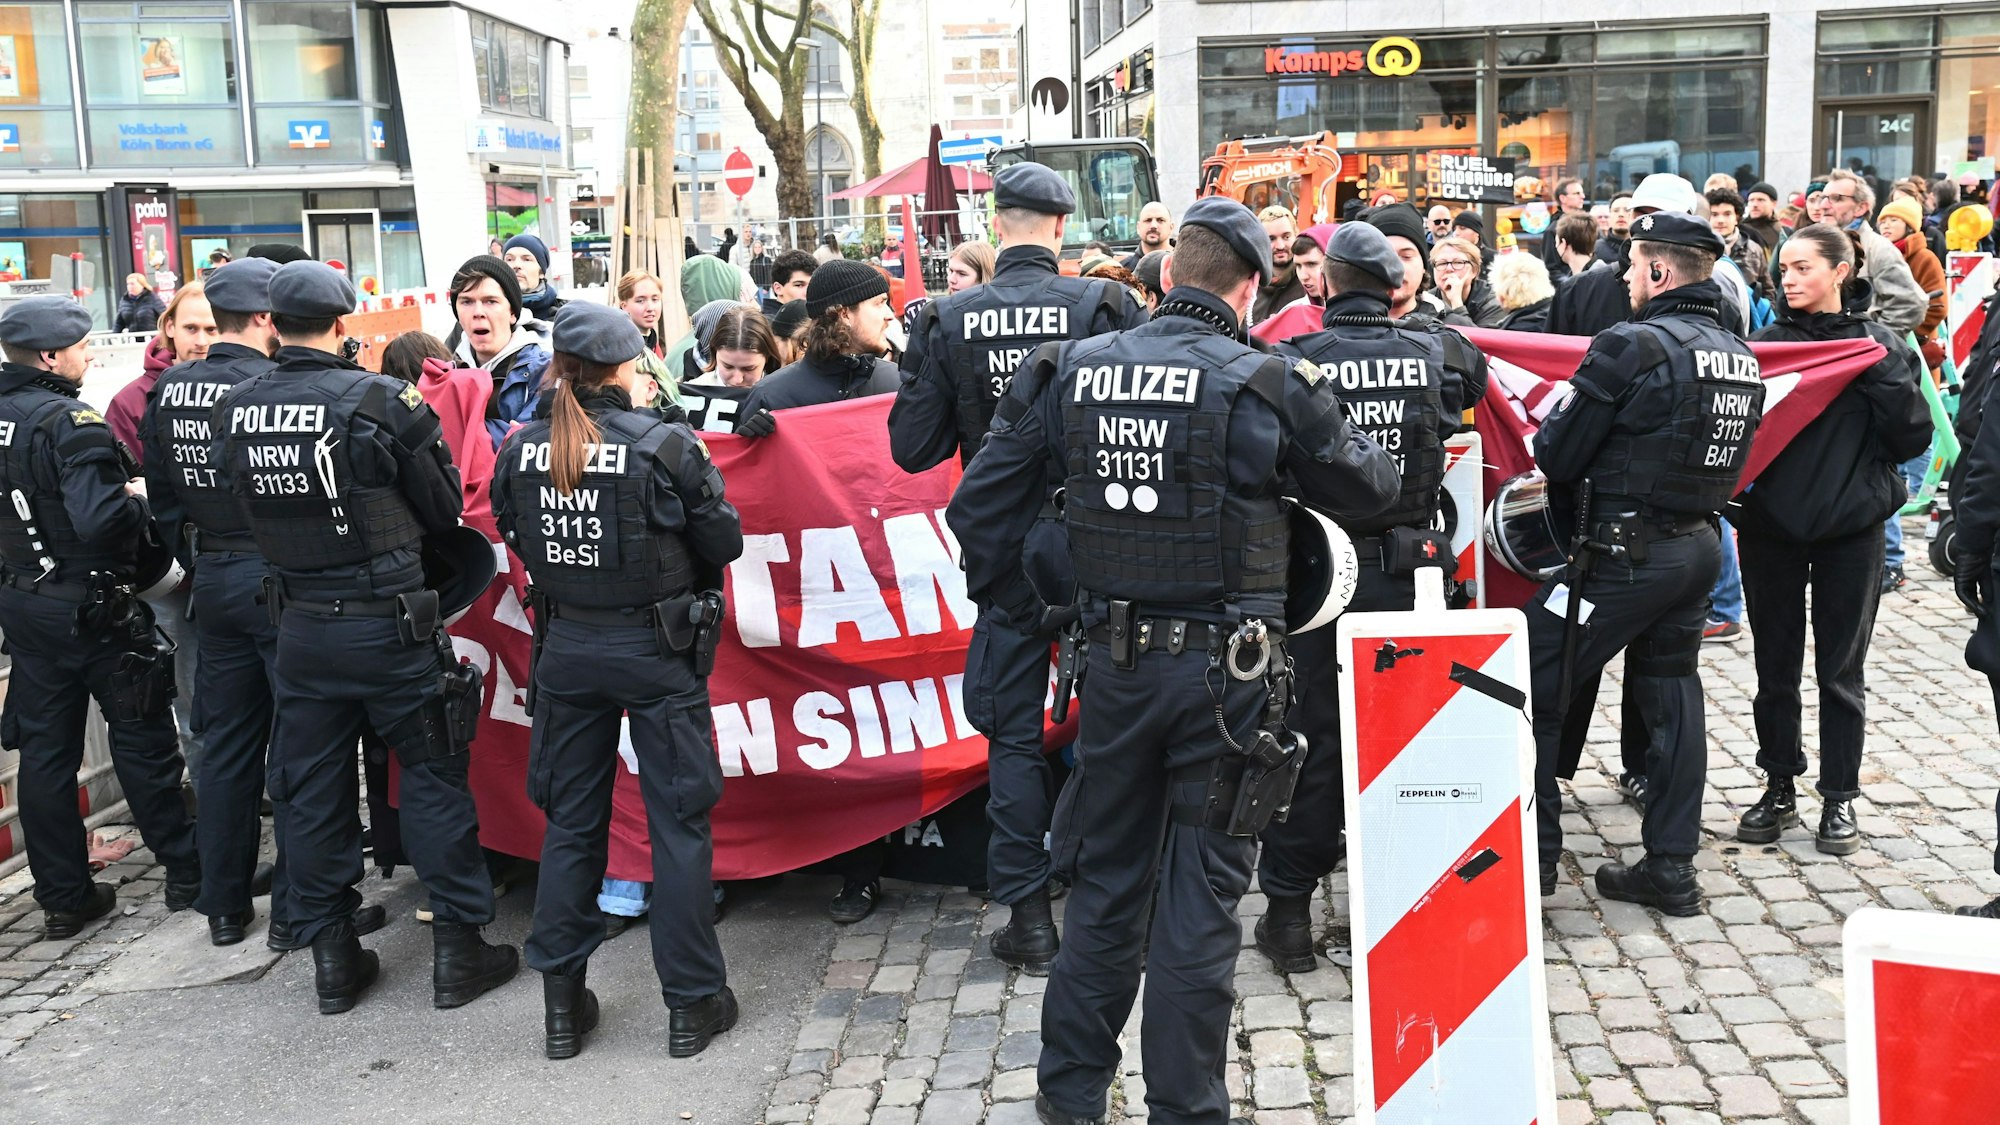 Die CDU stellt im Kölner Gürzenich ihr neues Grundsatzprogramm vor. Zuvor hatten sich Demonstranten versammelt, um gegen die CDU zu protestieren.